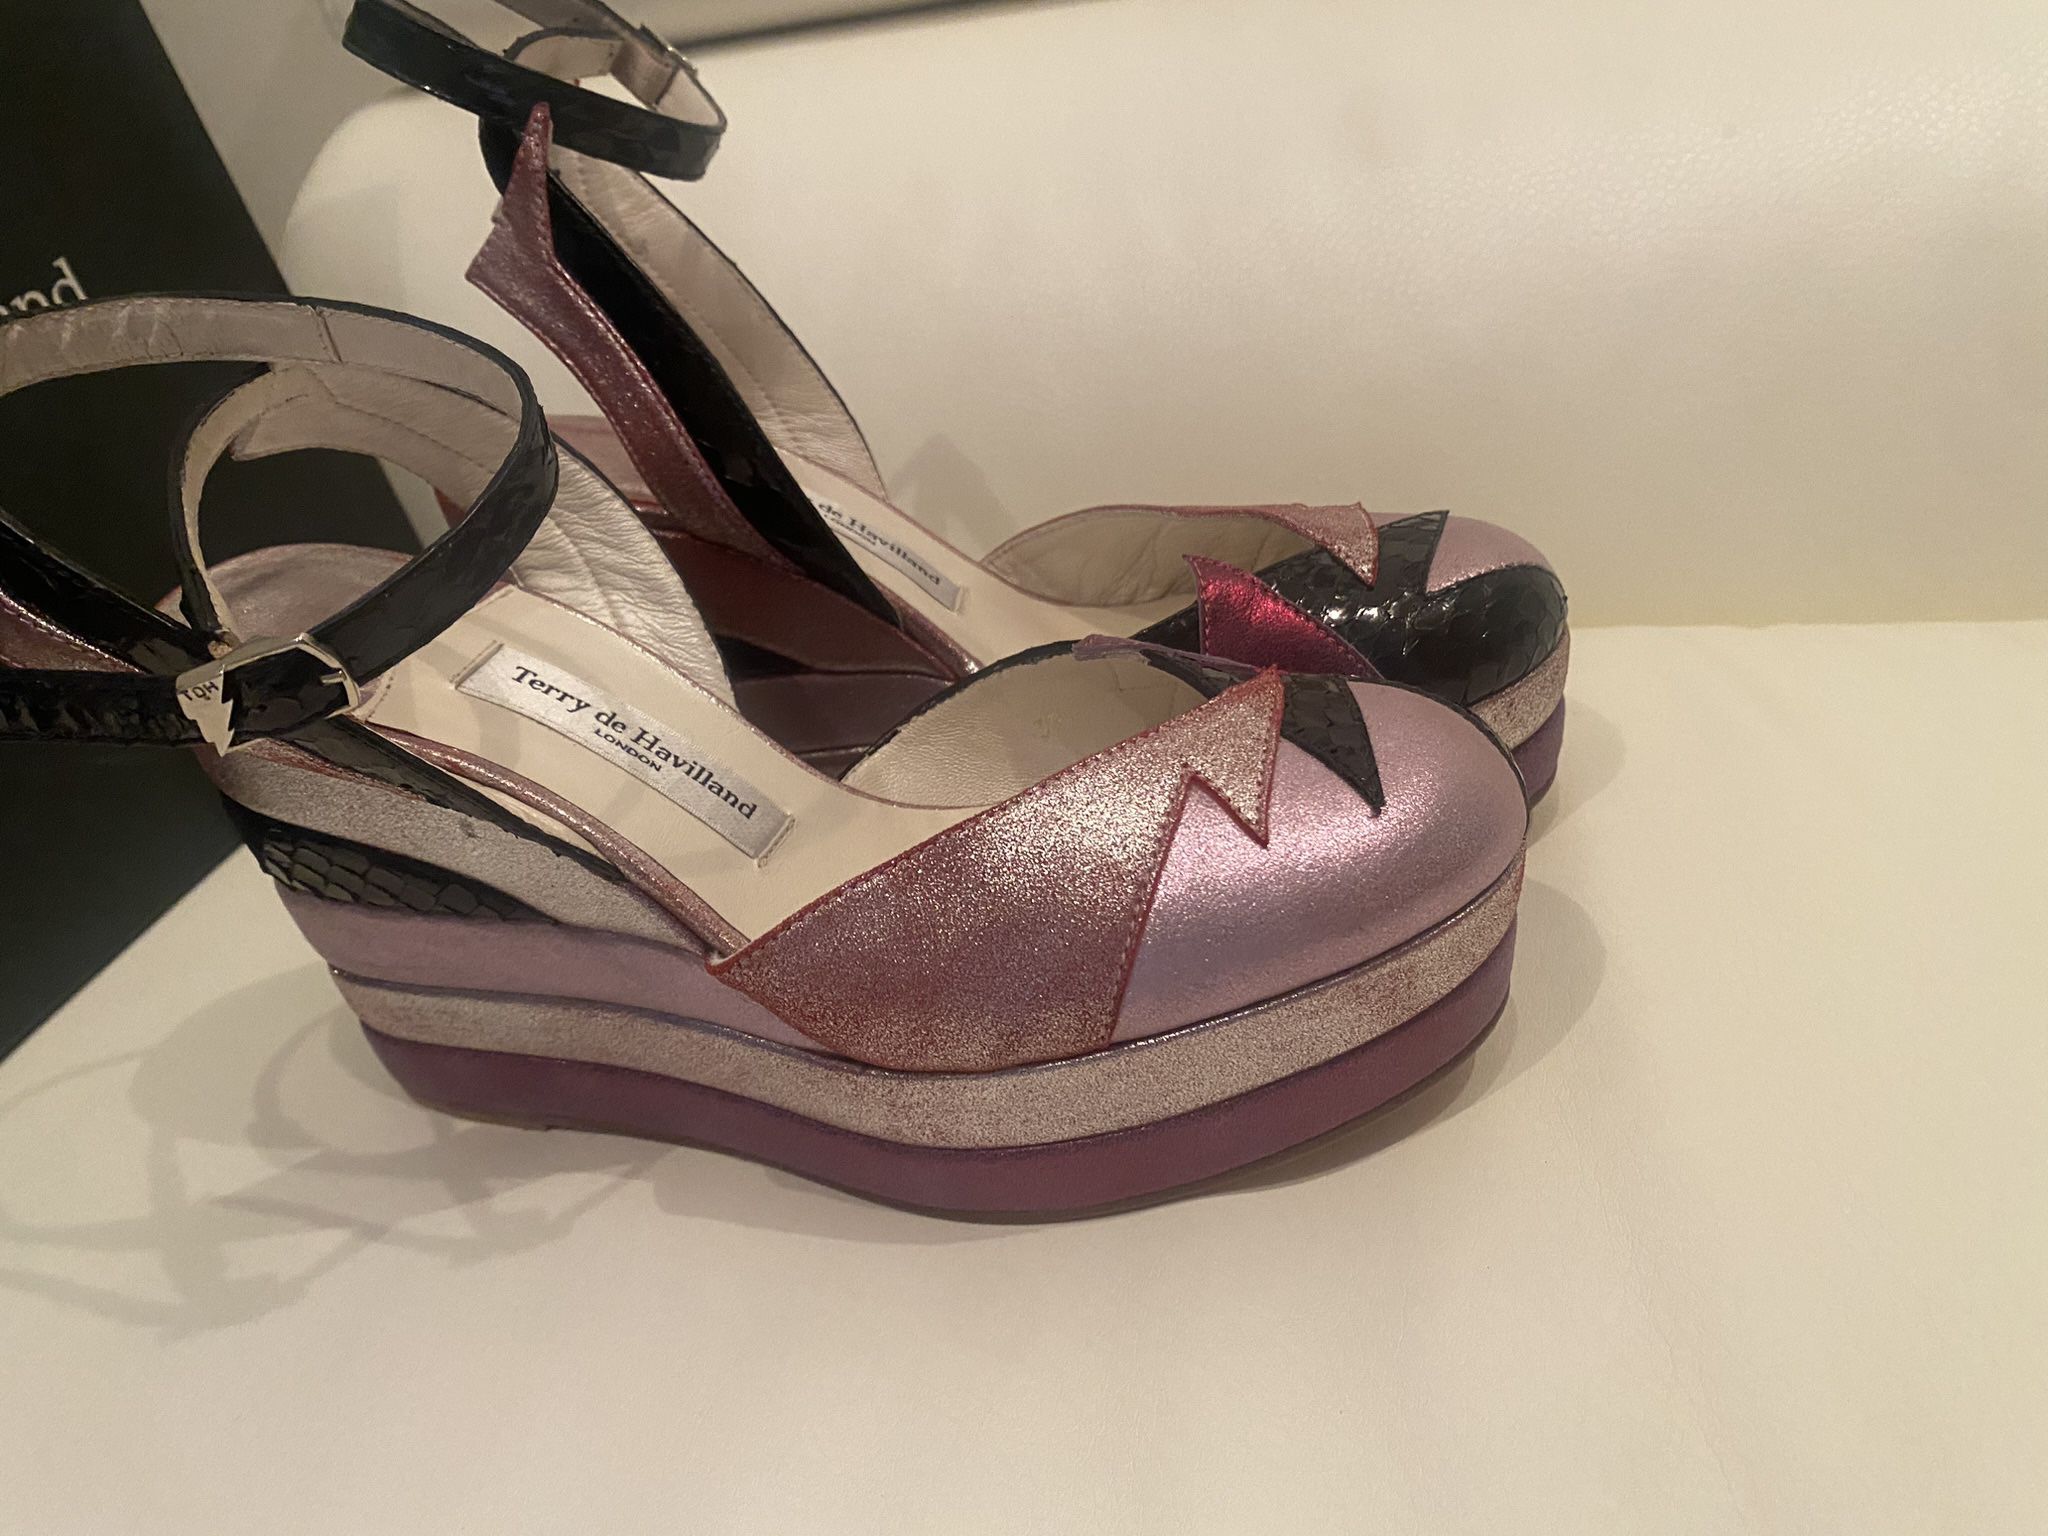 Shoes For Women Terry De Haviland Size 38 Platform 